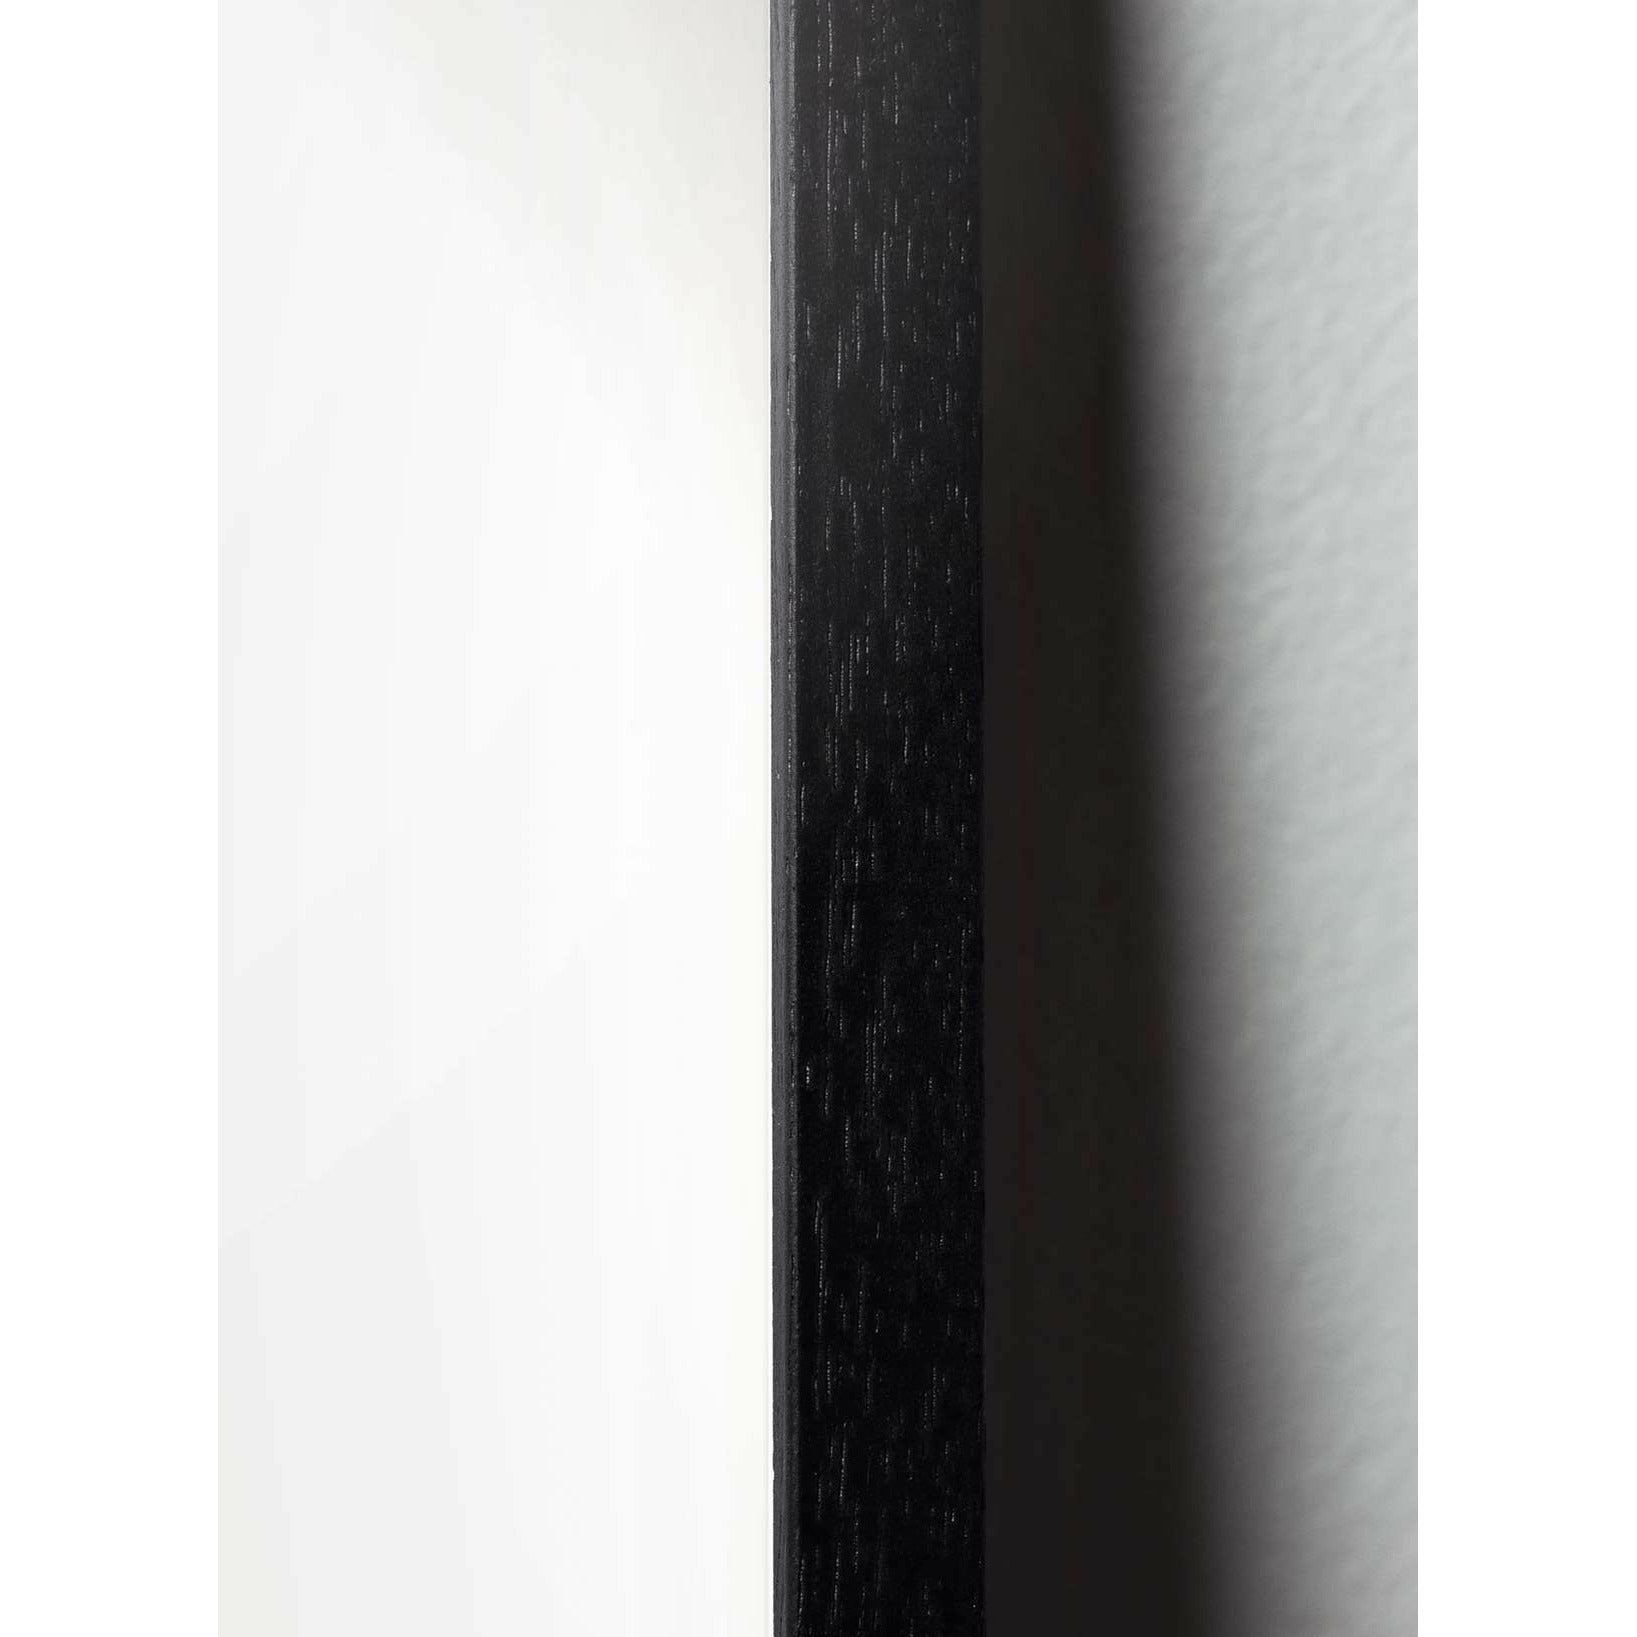 Póster clásico de caída de caída de creación, marco en madera lacada negra de 30x40 cm, fondo azul oscuro